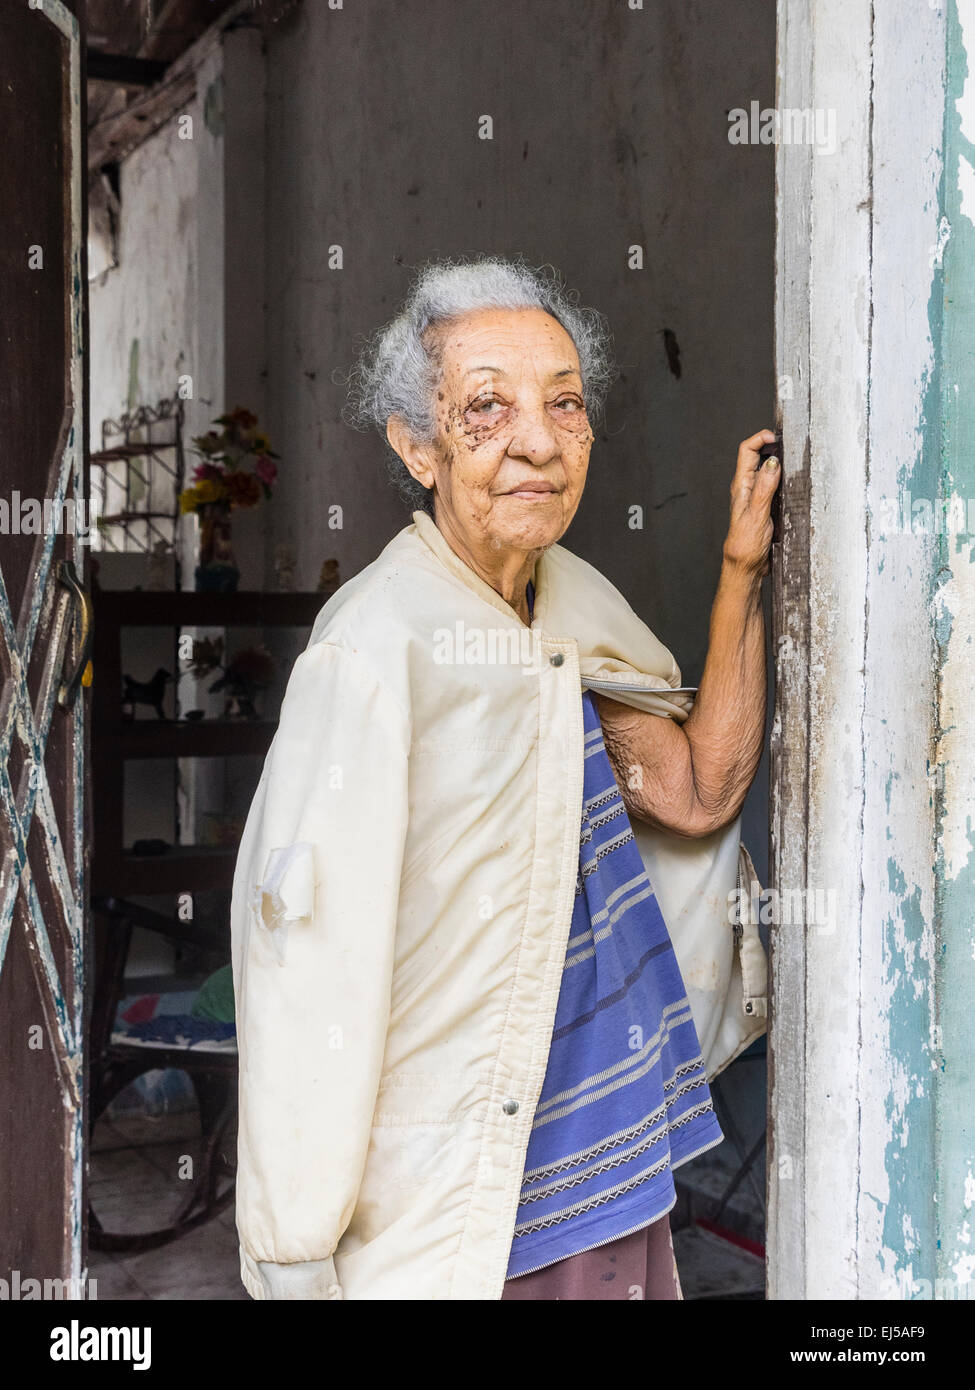 Femmina afro-cubane senior citizen con i capelli grigi si erge sulla porta della sua casa guardando fuori con un braccio contro la porta. Foto Stock